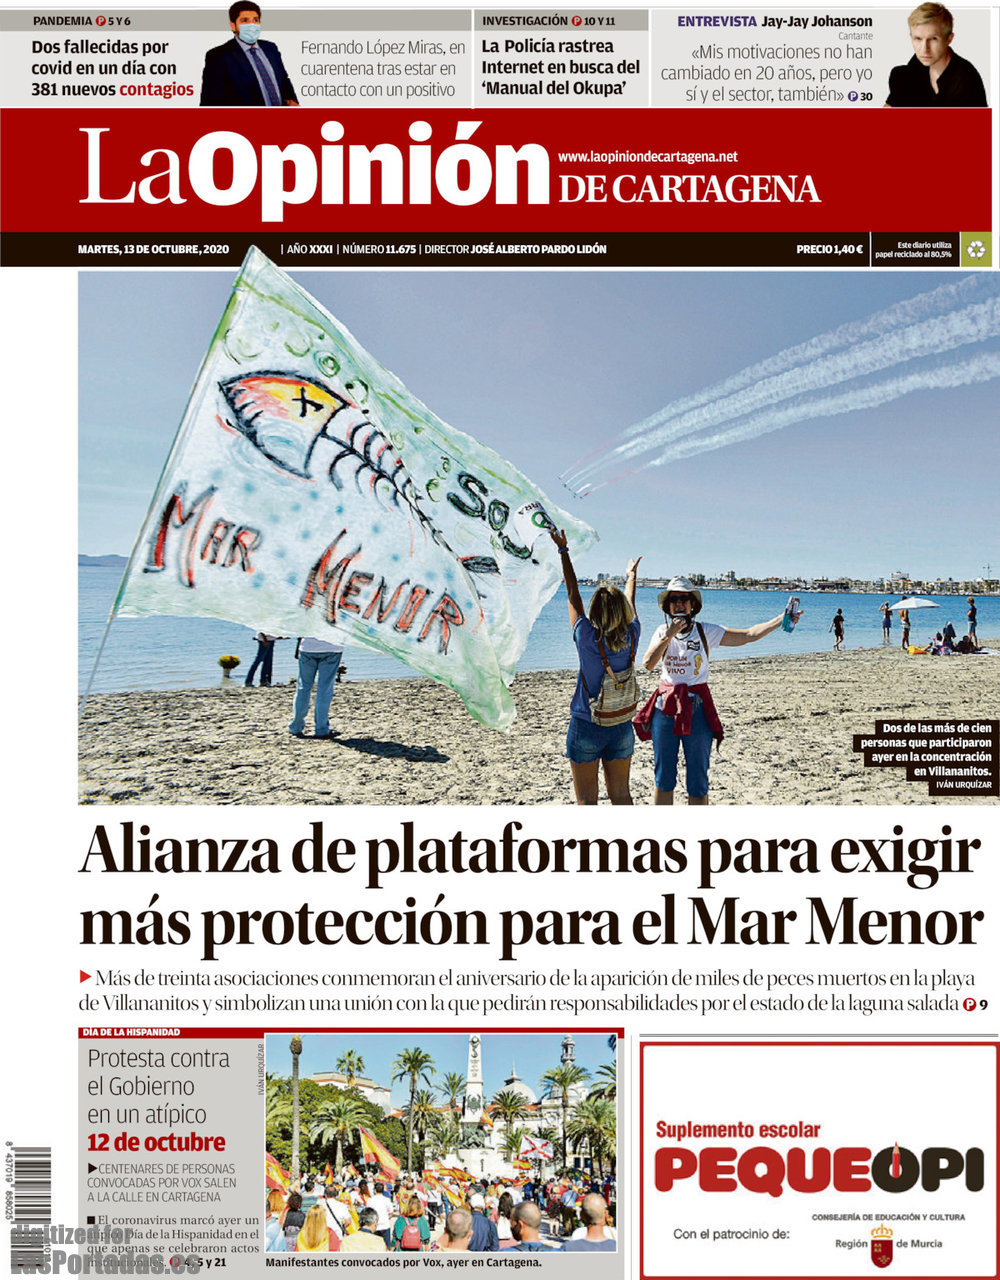 La Opinión de Cartagena